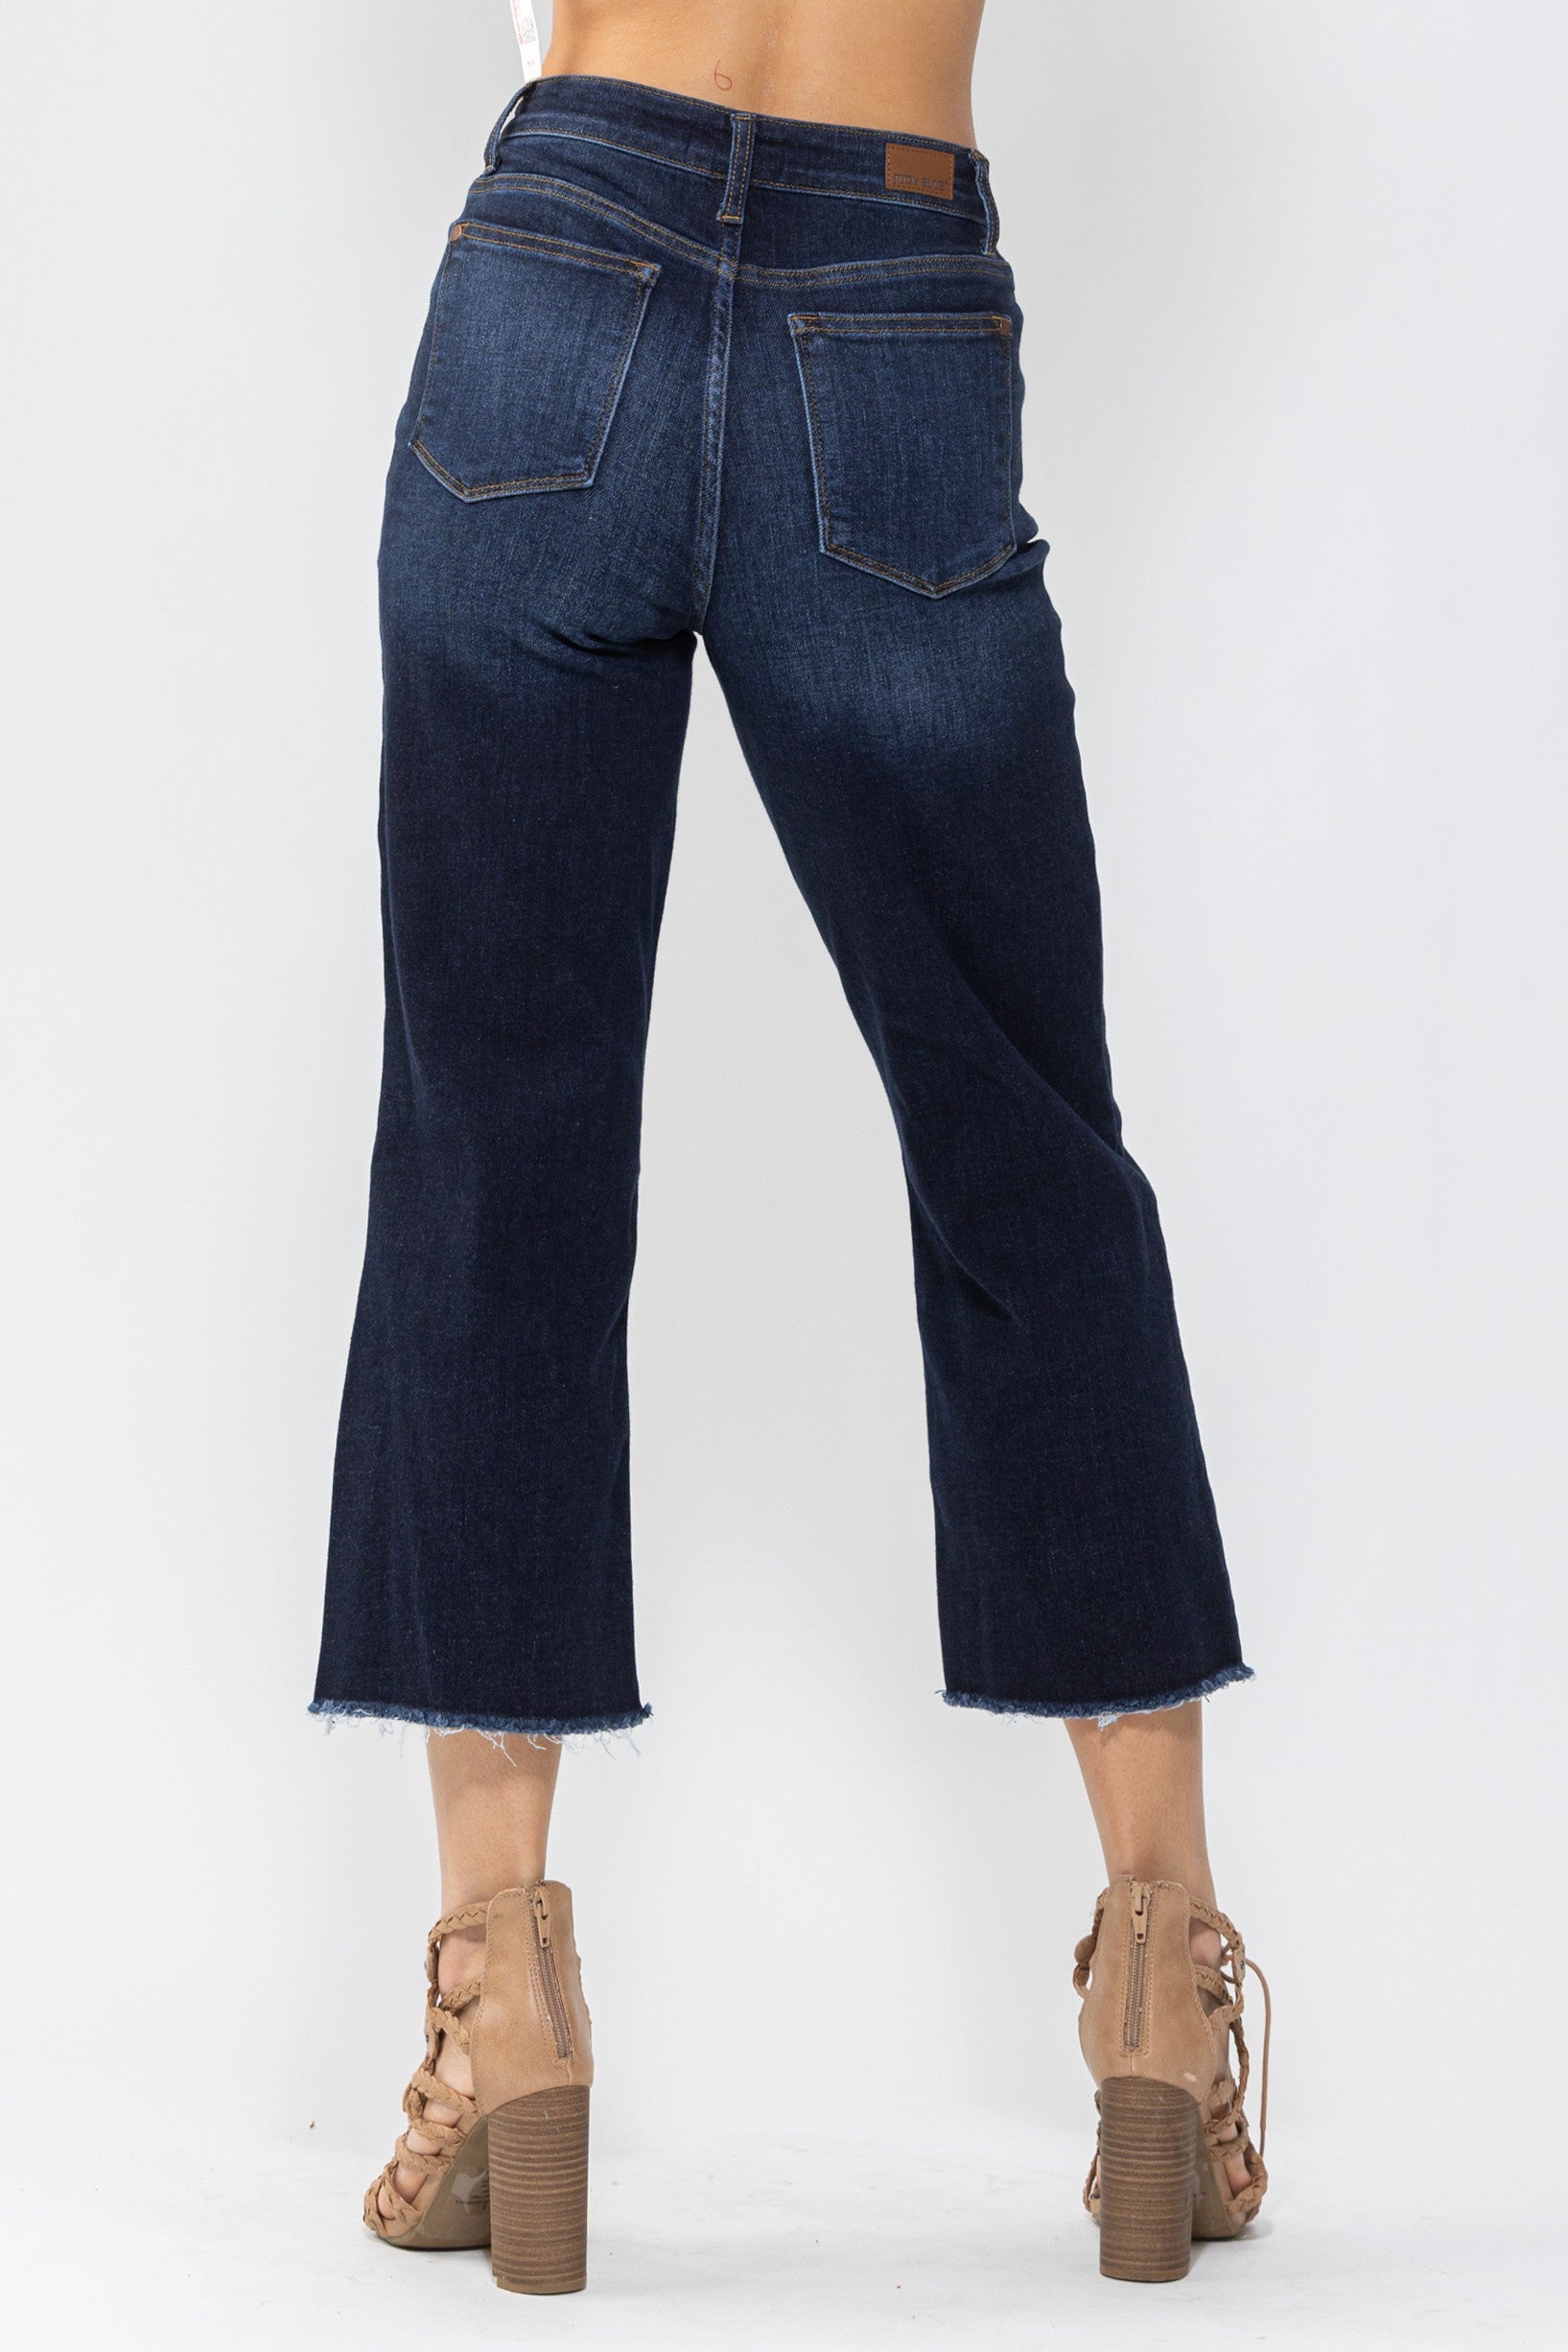 Judy Blue | High Waist Cropped Wide Leg Jeans